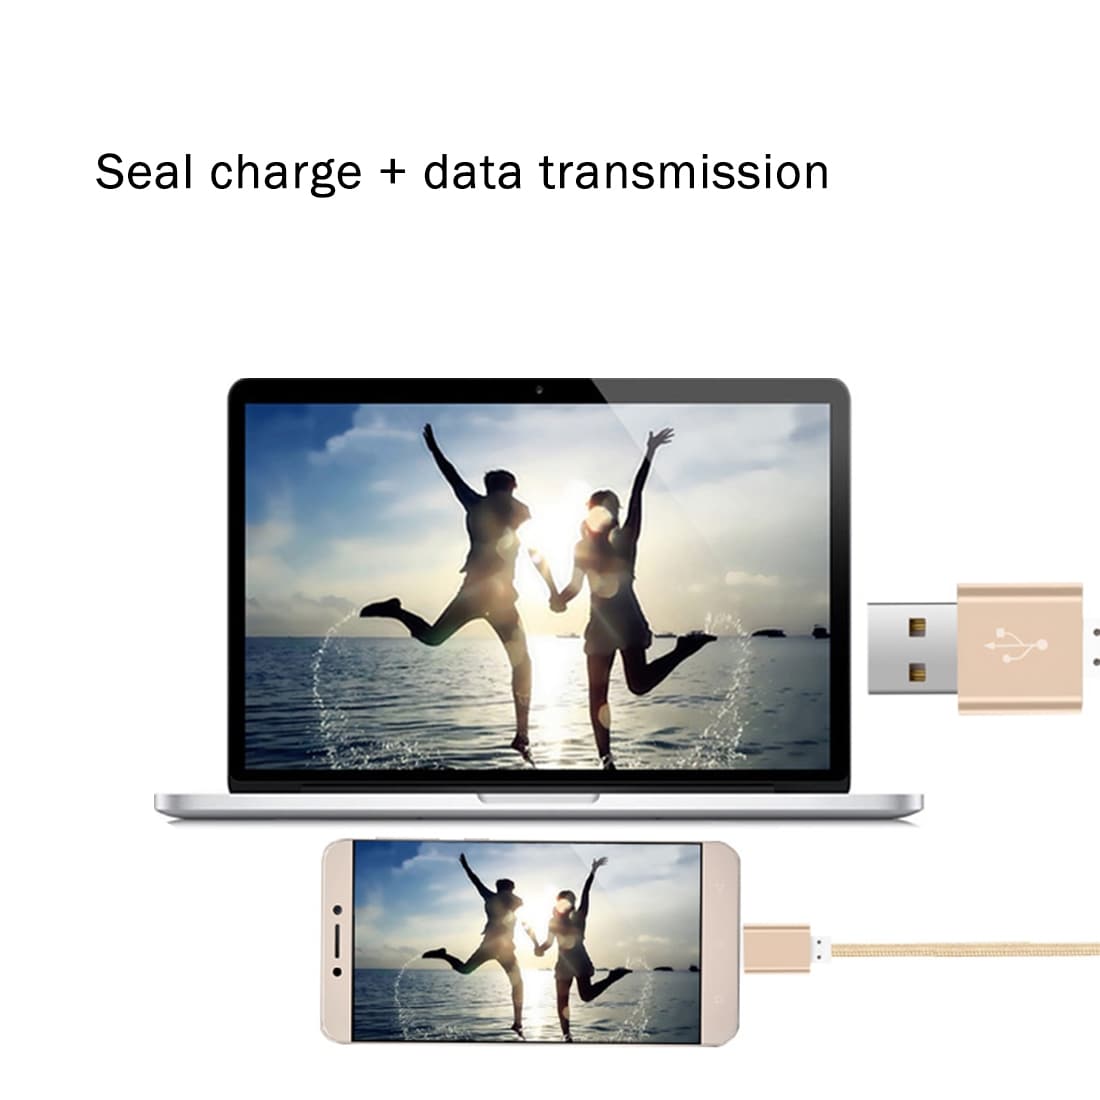 Tygbeklädd USB 3.1 Typ-c till USB 2.0 Data/Ladd kabel med metallhuvud